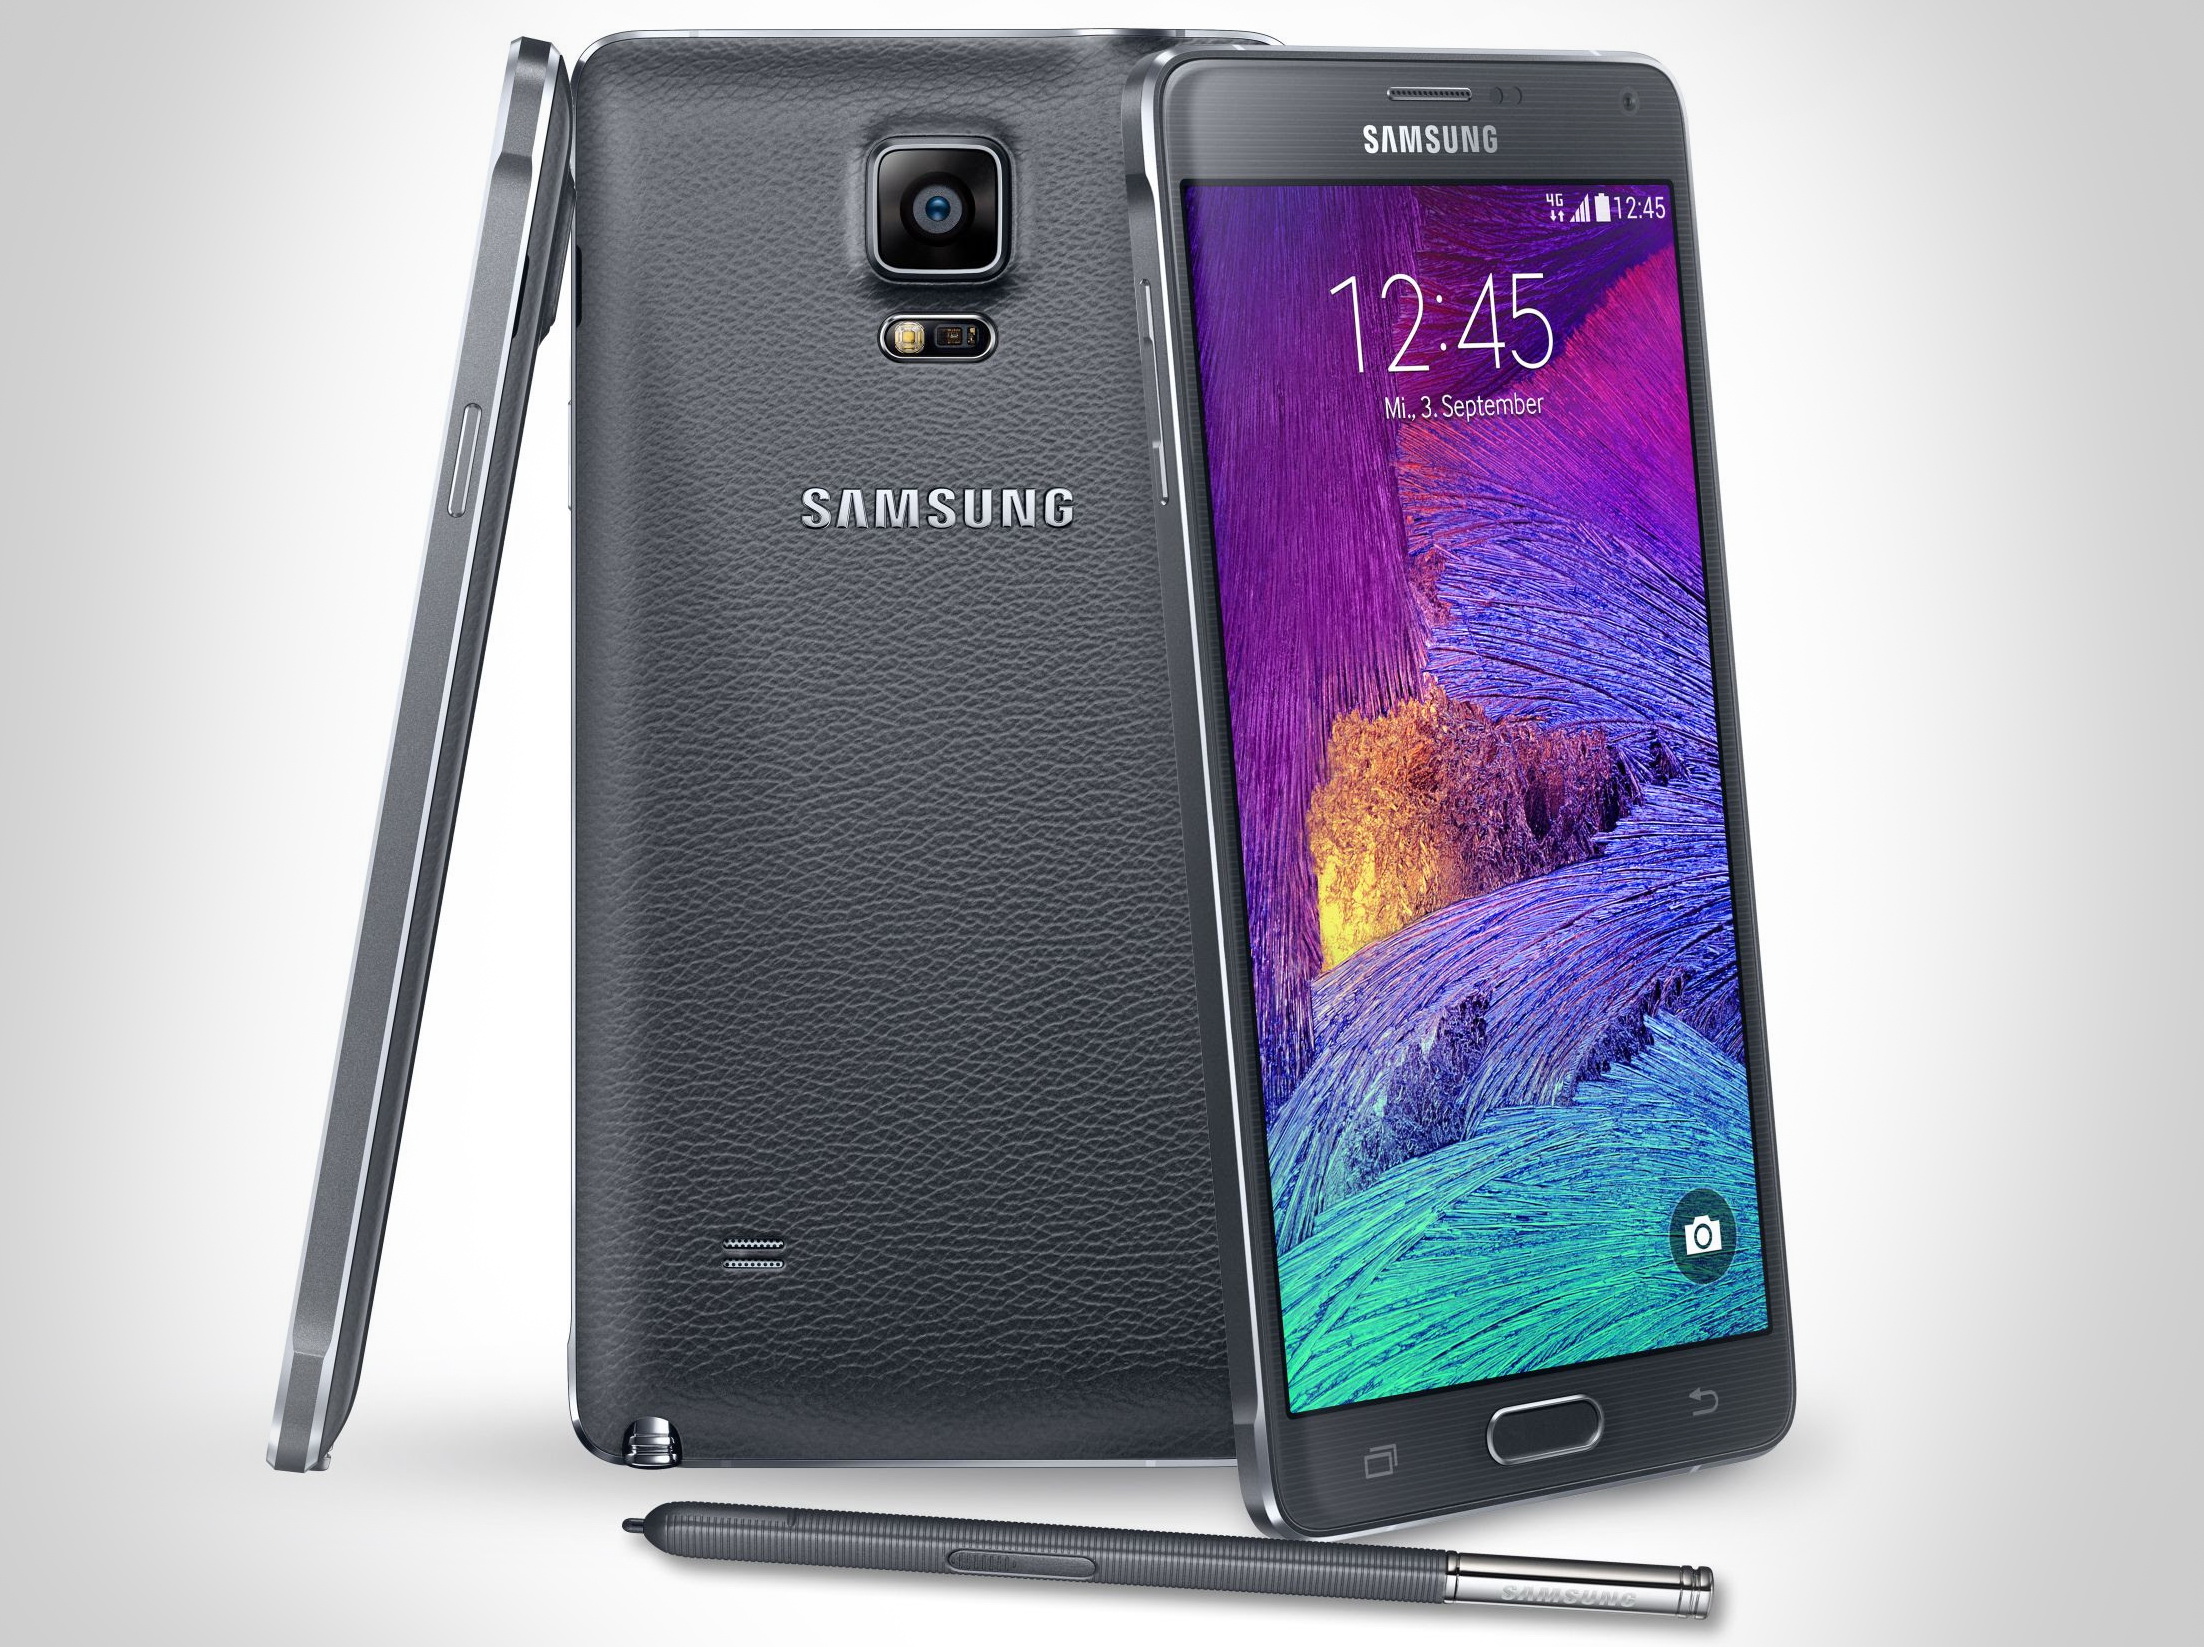 Samsung Mobiltelefone: Vorwurf unfairer Preise